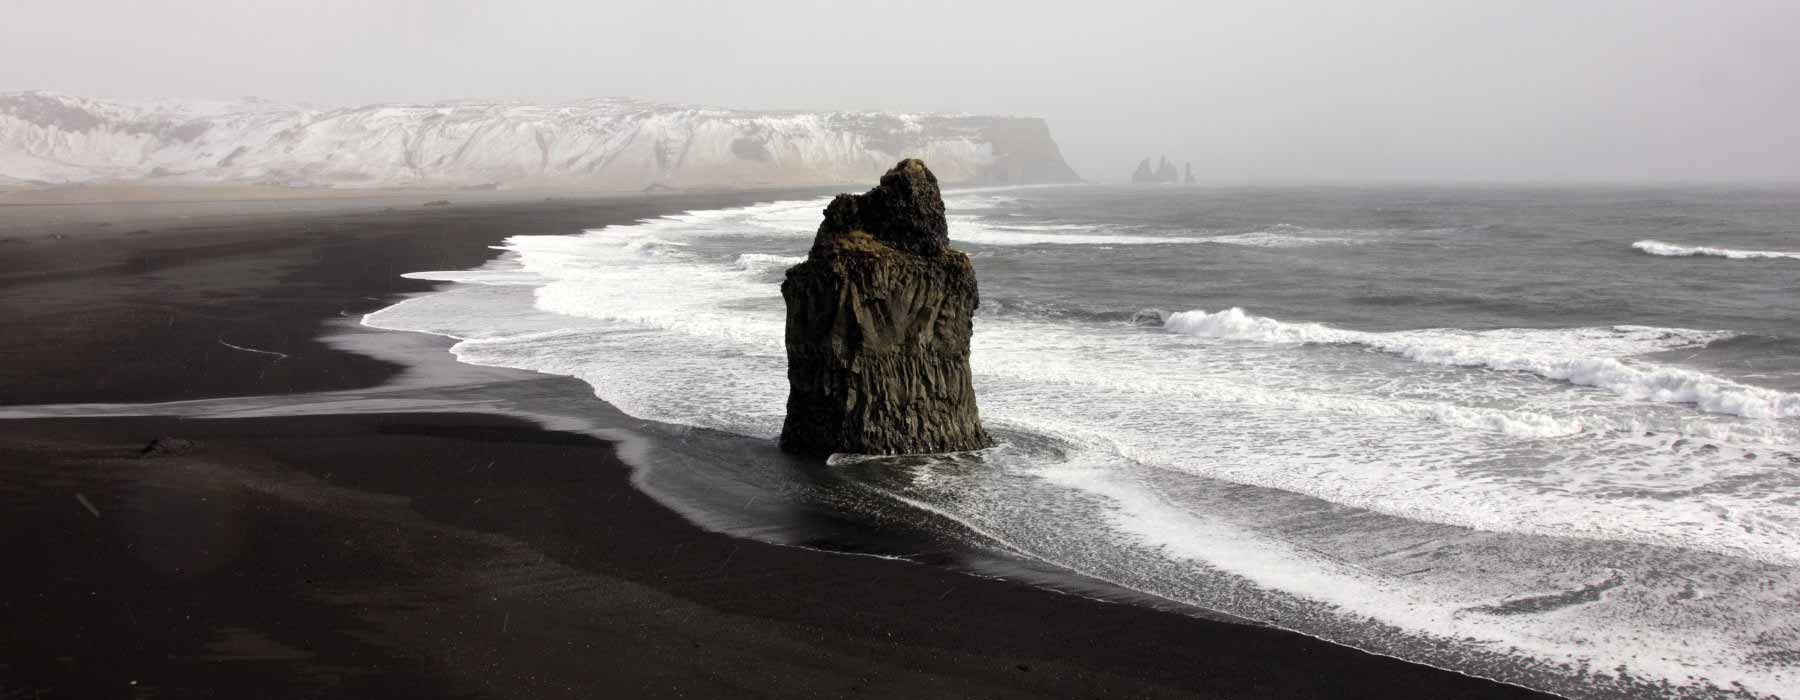 Iceland<br class="hidden-md hidden-lg" /> Near Frontiers Holidays